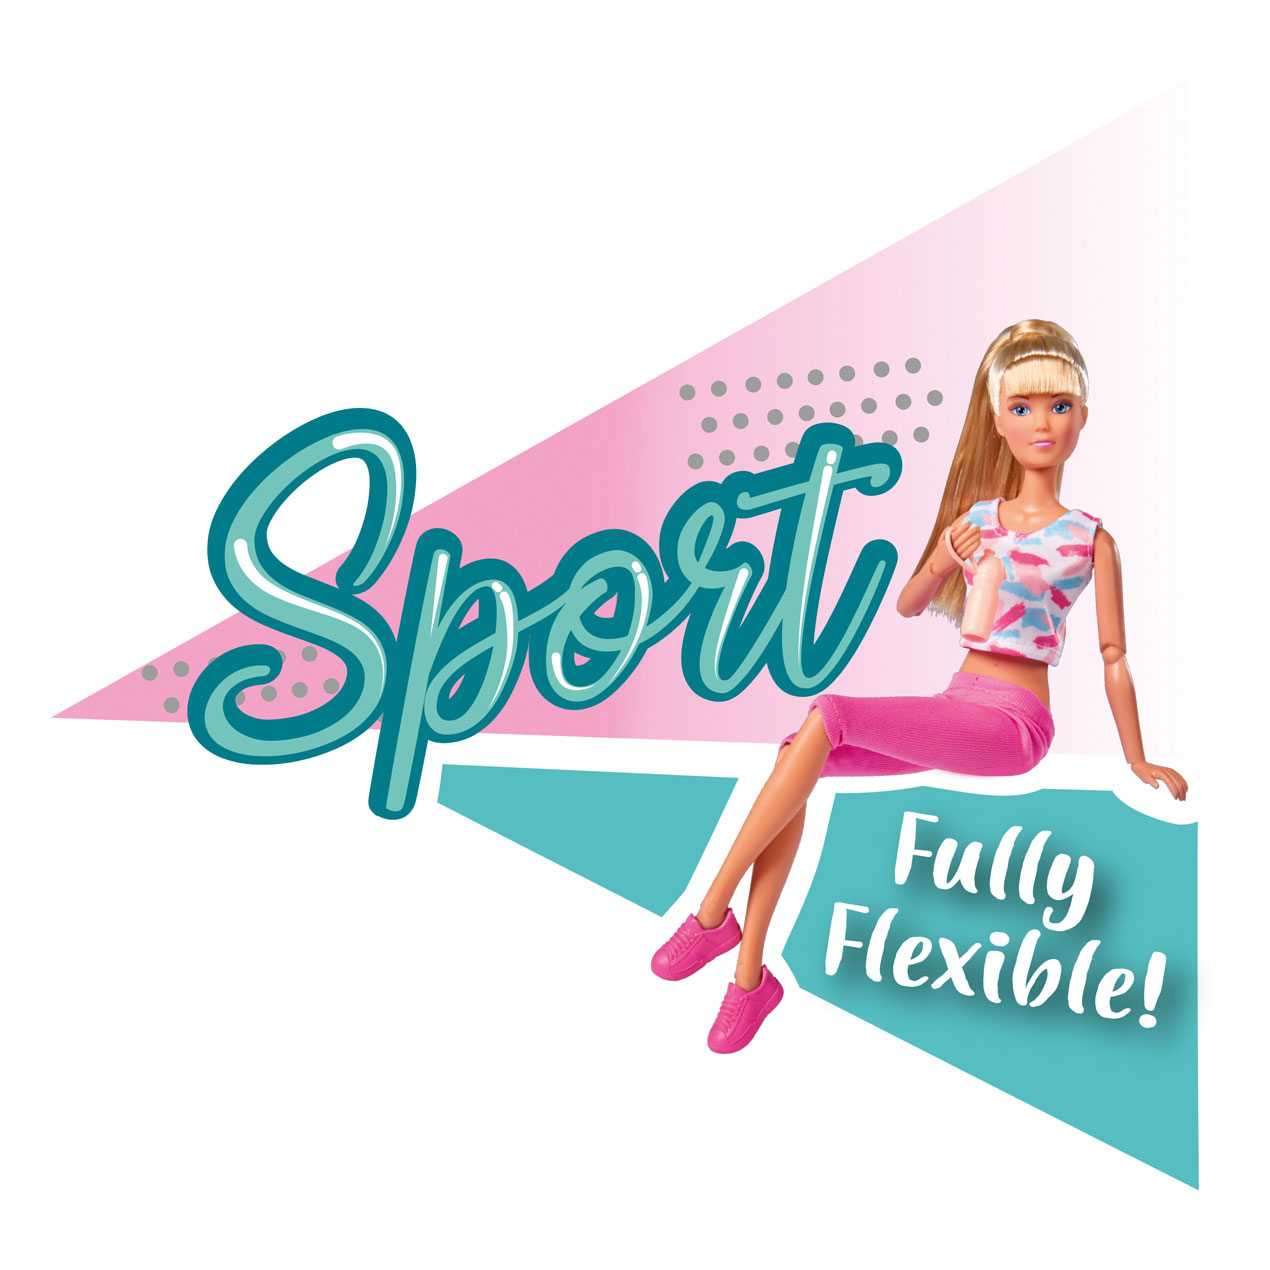 Steffi Love Sportpuppe